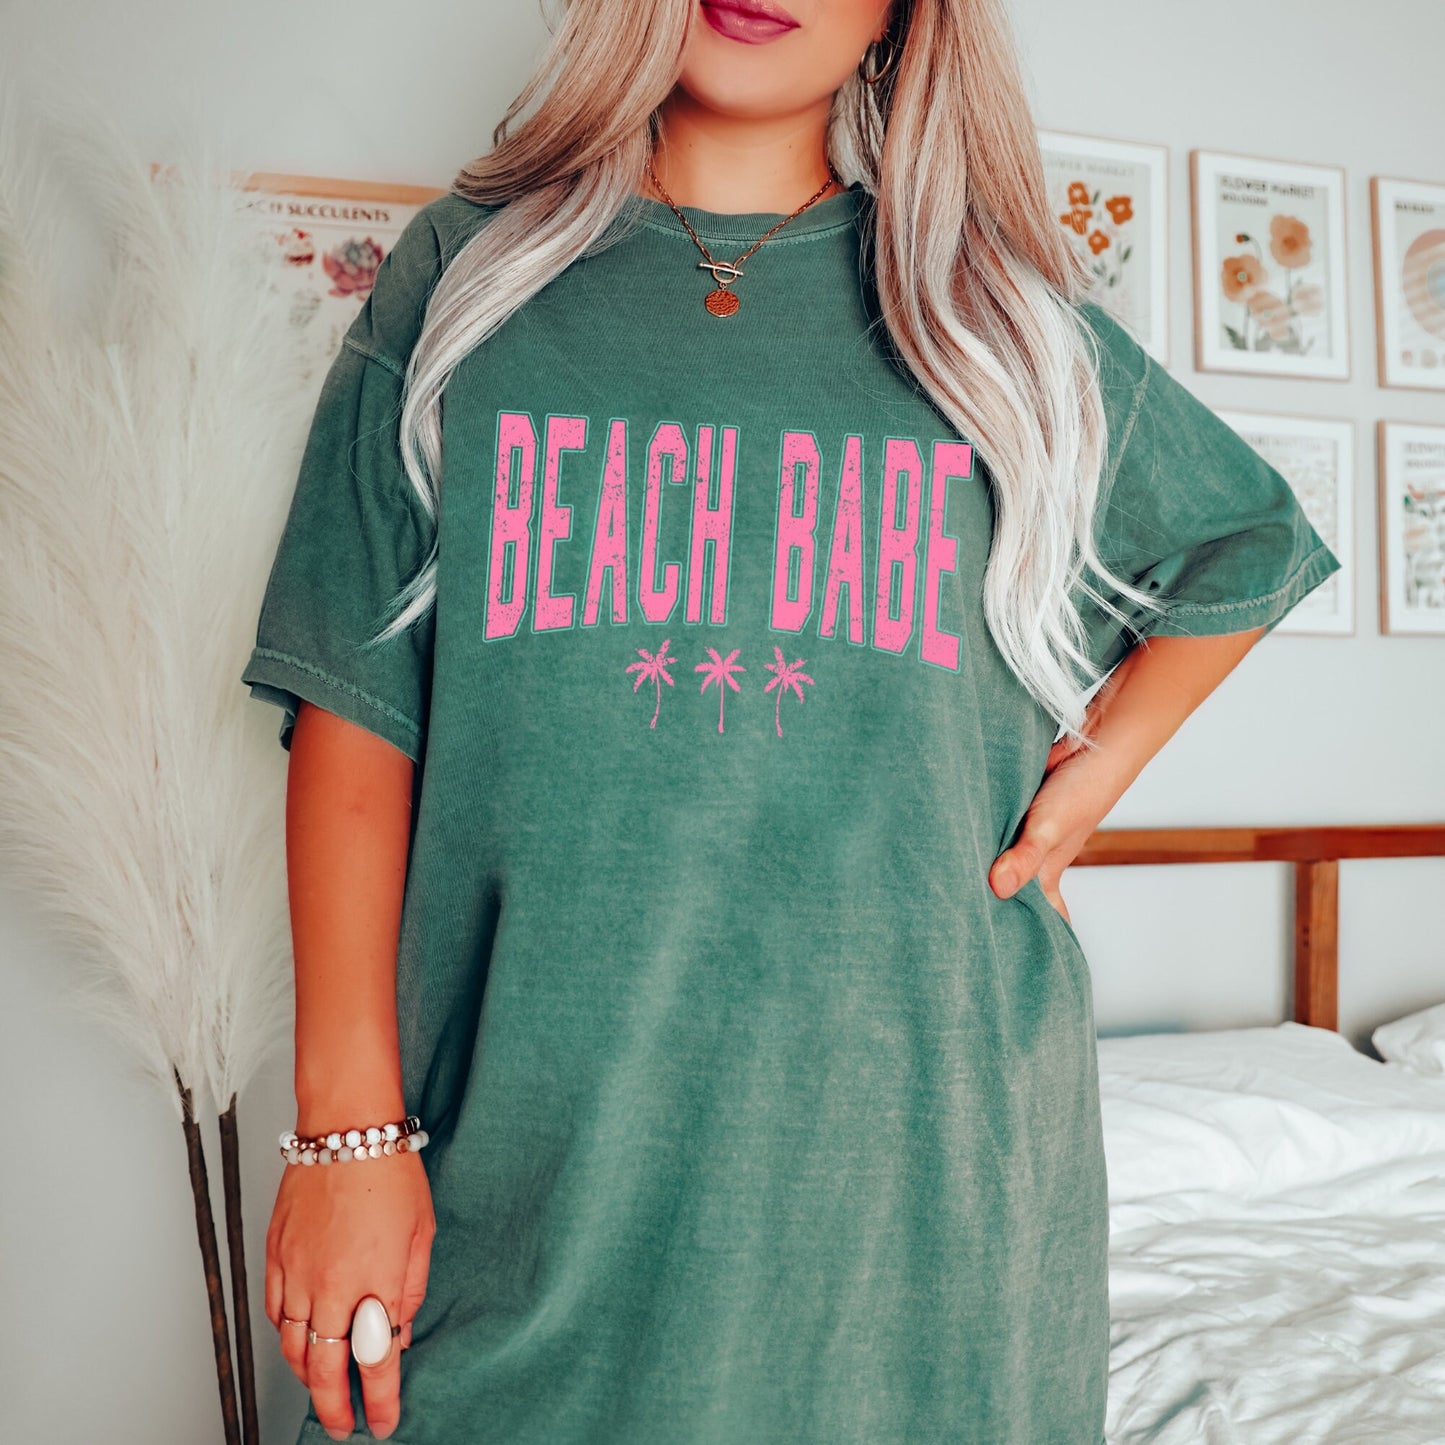 Beach Babe Tee